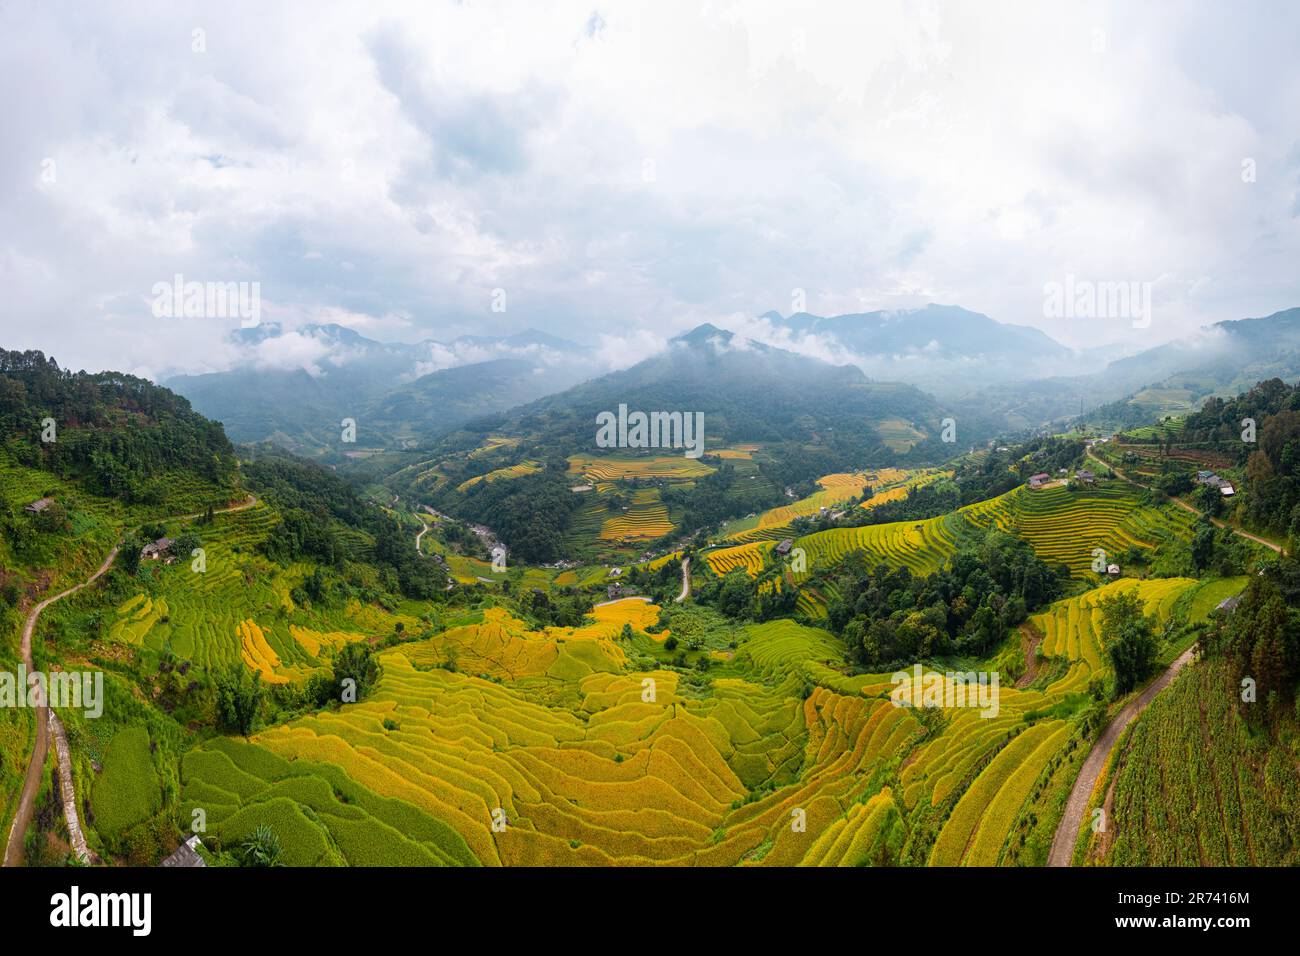 Majestueux champs en terrasse dans le district de Mu Cang Chai, province de Yen Bai, Vietnam. Champs de riz prêts à être récoltés dans le nord-ouest du Vietnam. Banque D'Images